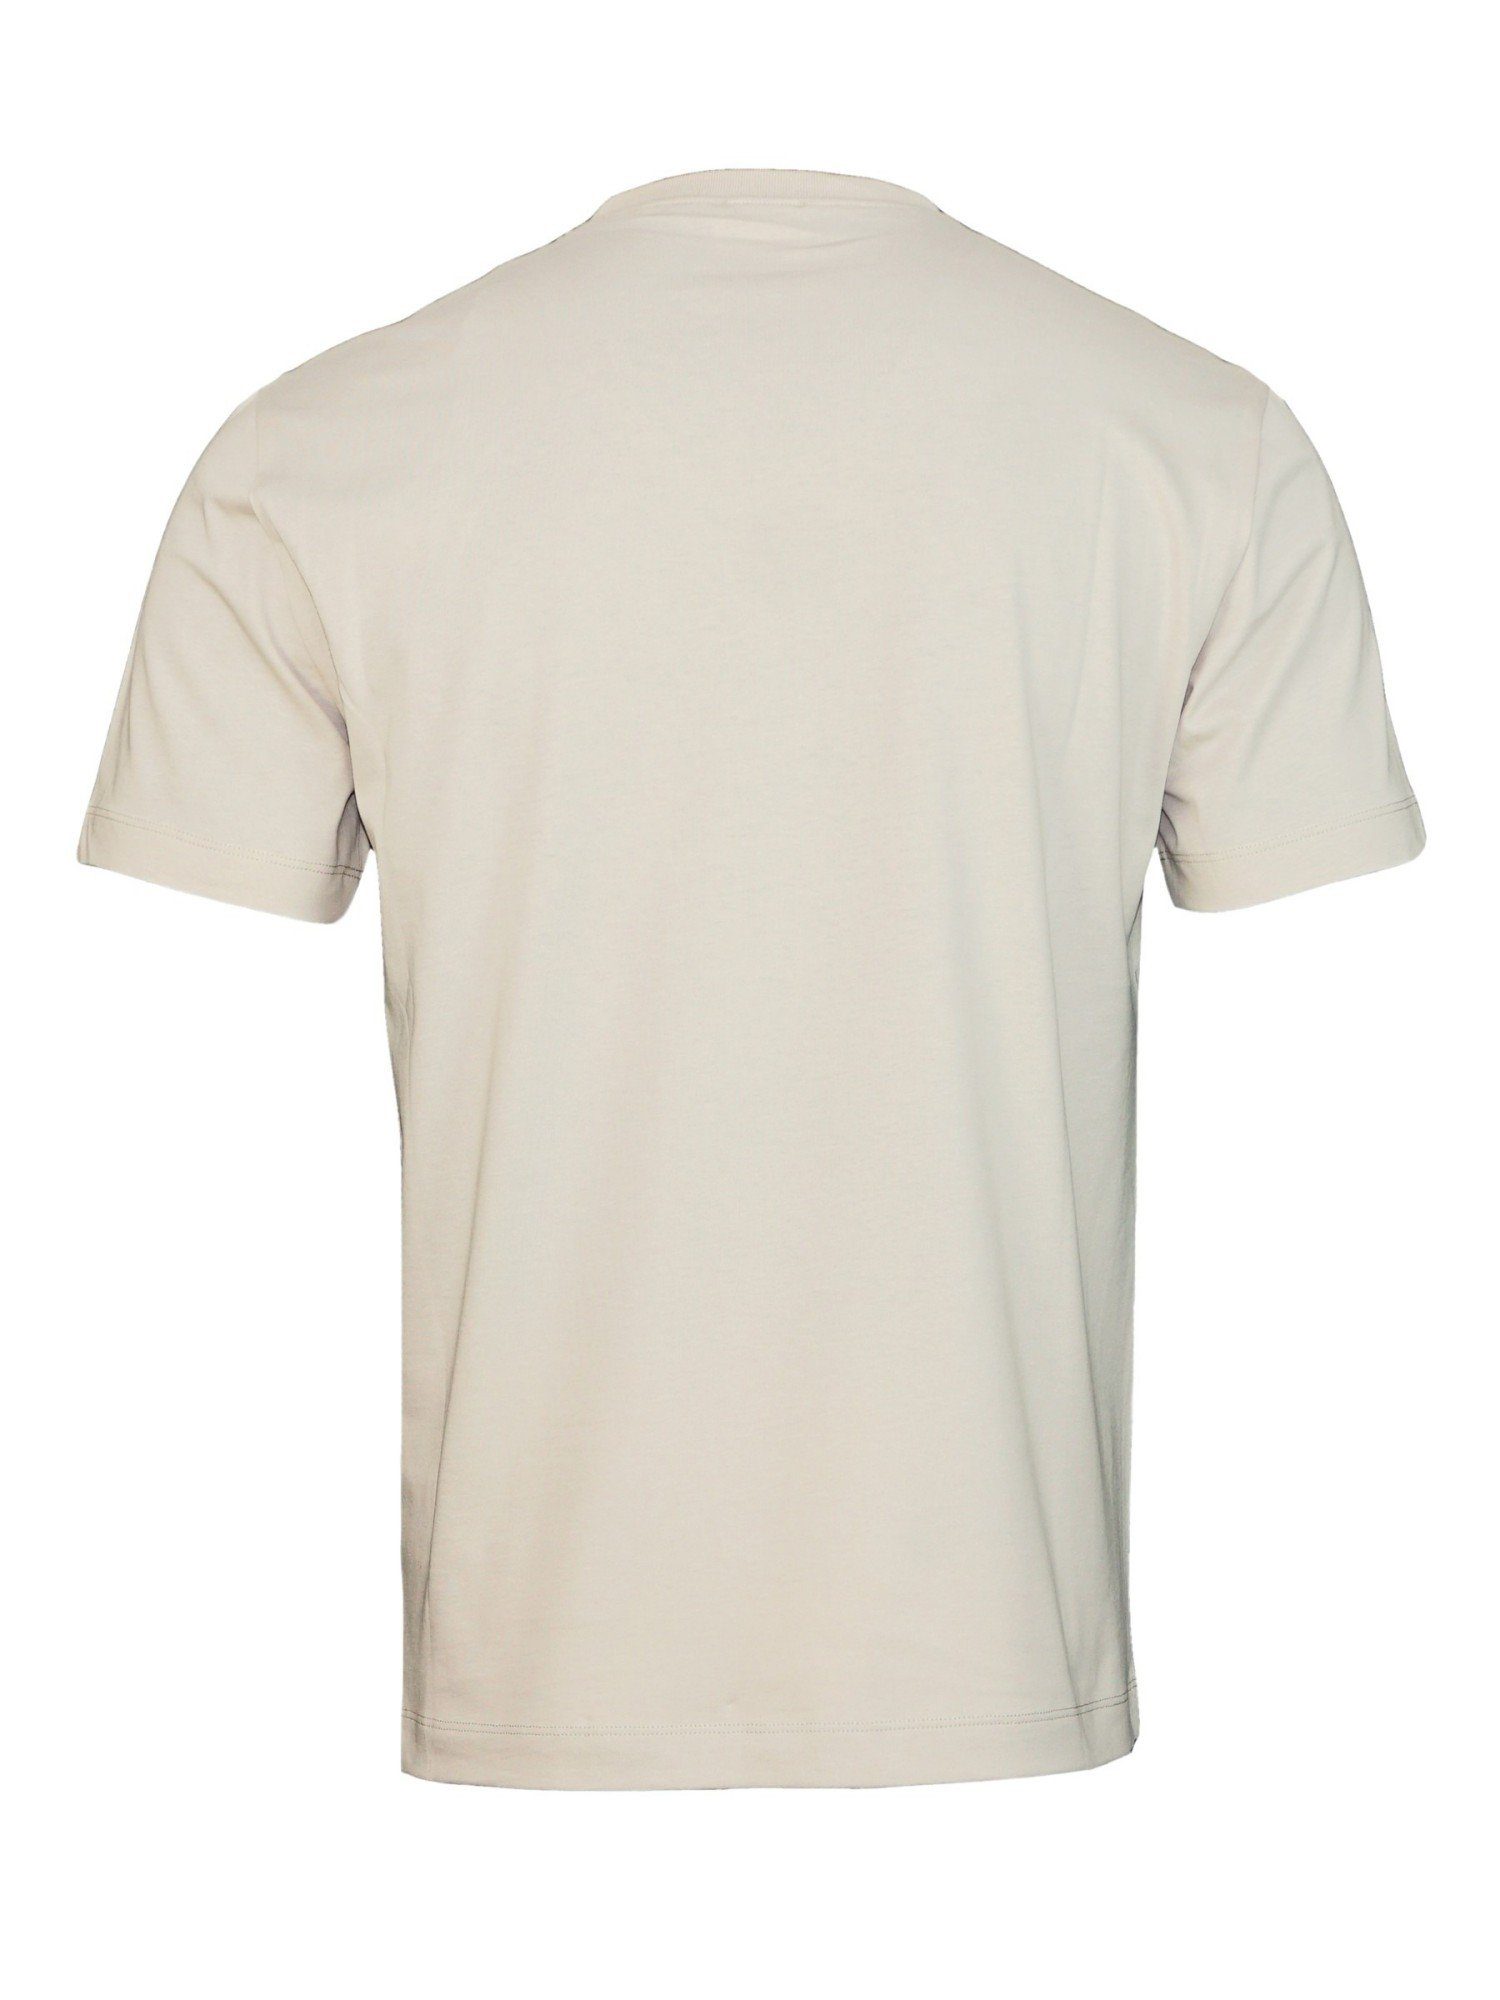 mit (1-tlg) Emporio Tee Logo Armani beige T-Shirt Rundhalsausschnitt Shirt